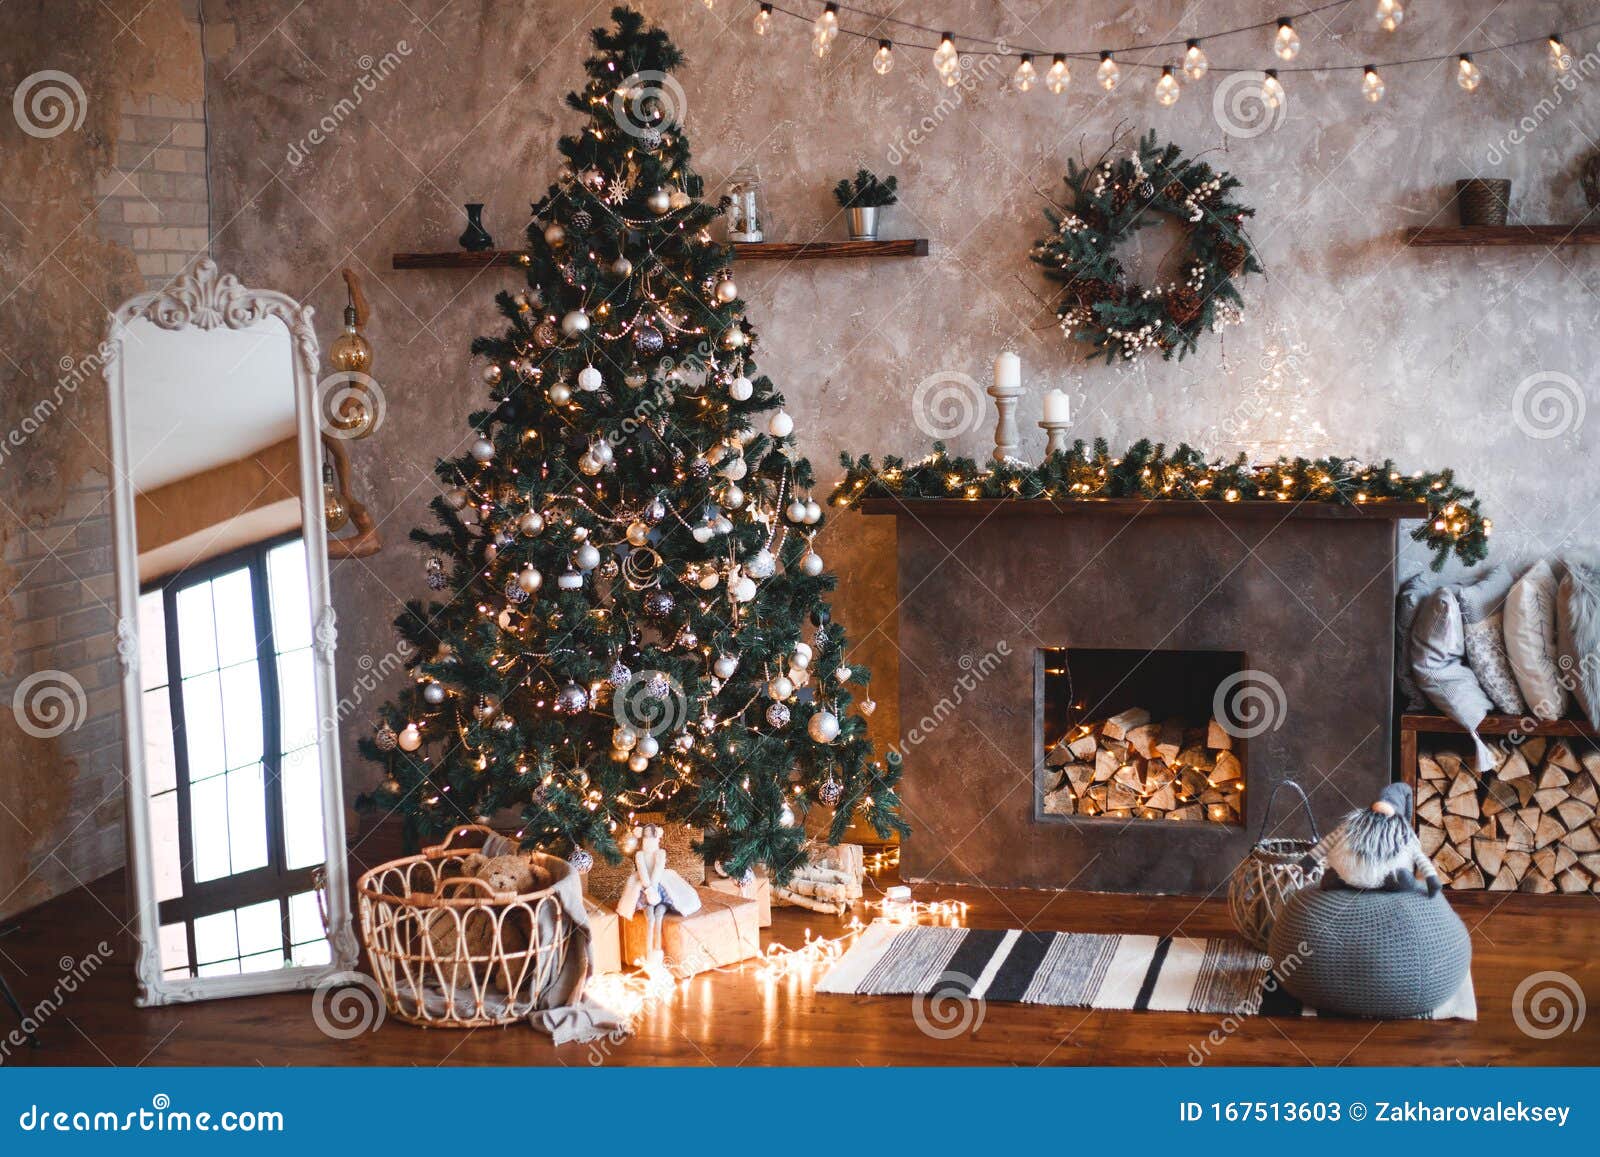 Decoración De Invierno En Casa Árbol De Navidad En El Interior De Loft  Contra Pared De Ladrillo Imagen de archivo - Imagen de chimenea, interior:  167513603